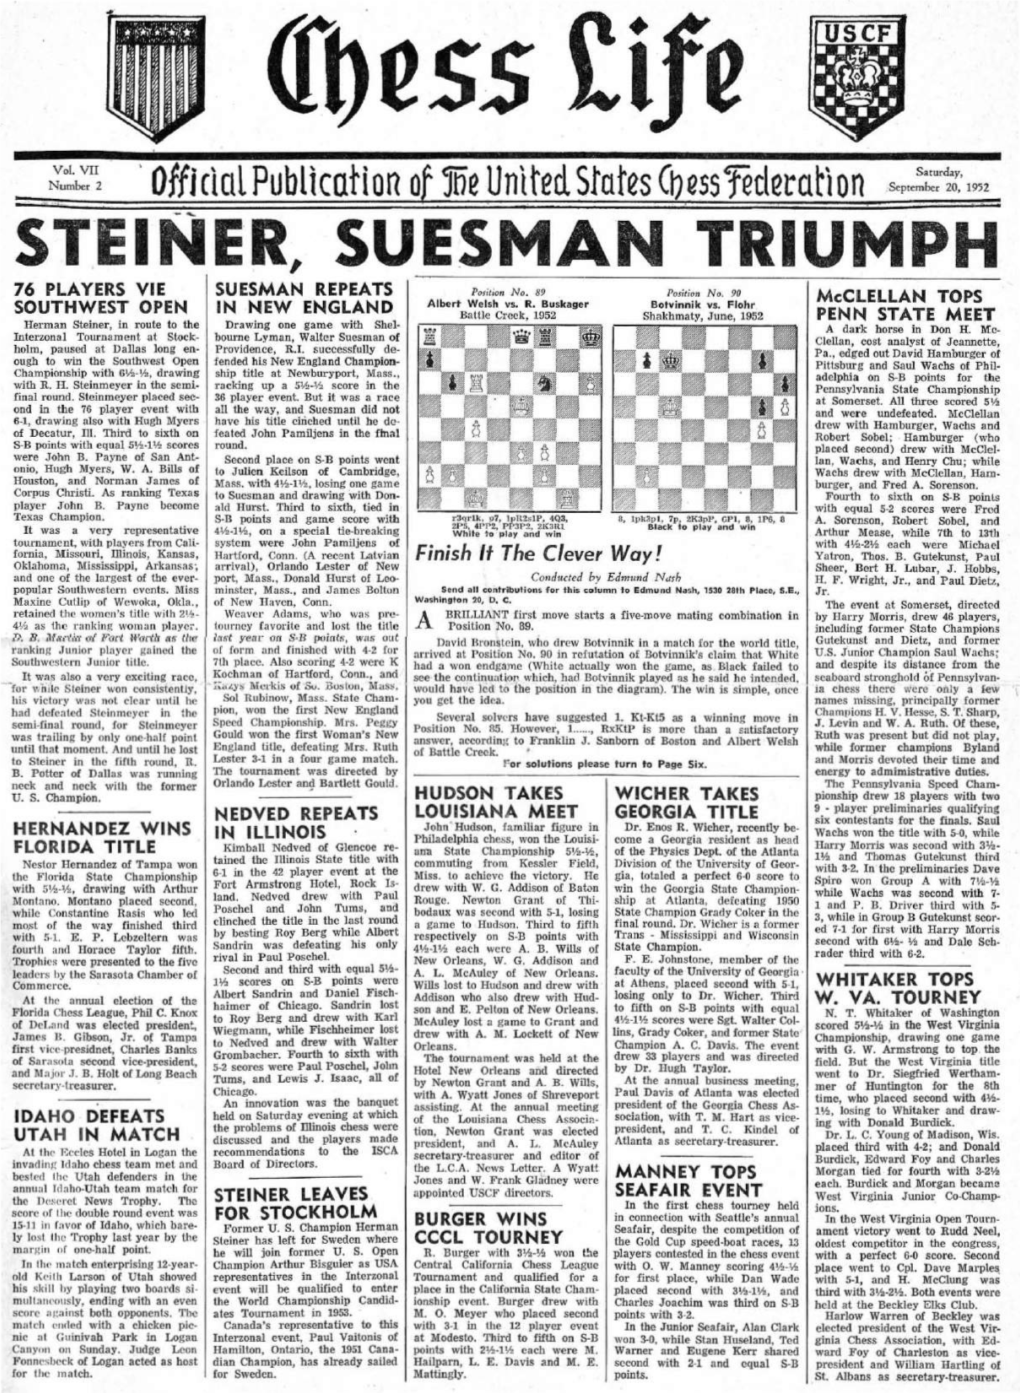 Steiner, Suesman Triumph